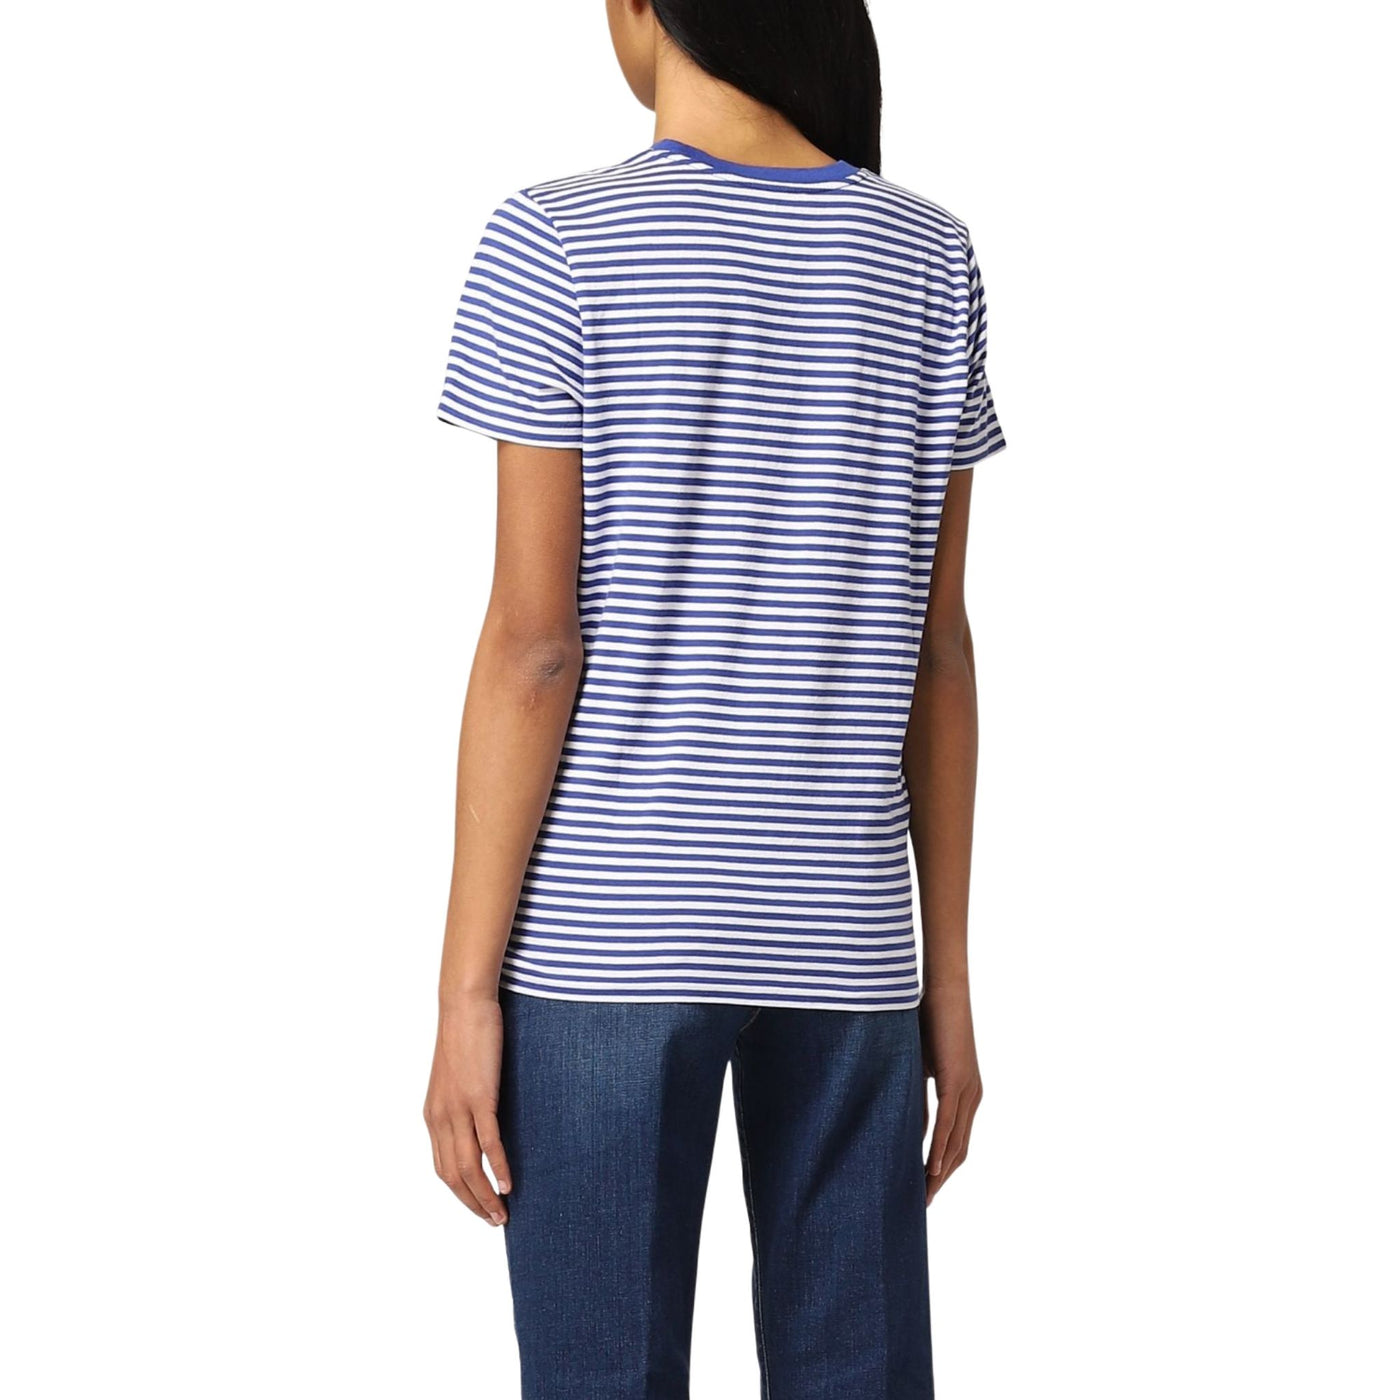 T-shirt donna Polo Ralph Lauren su modella vista retro